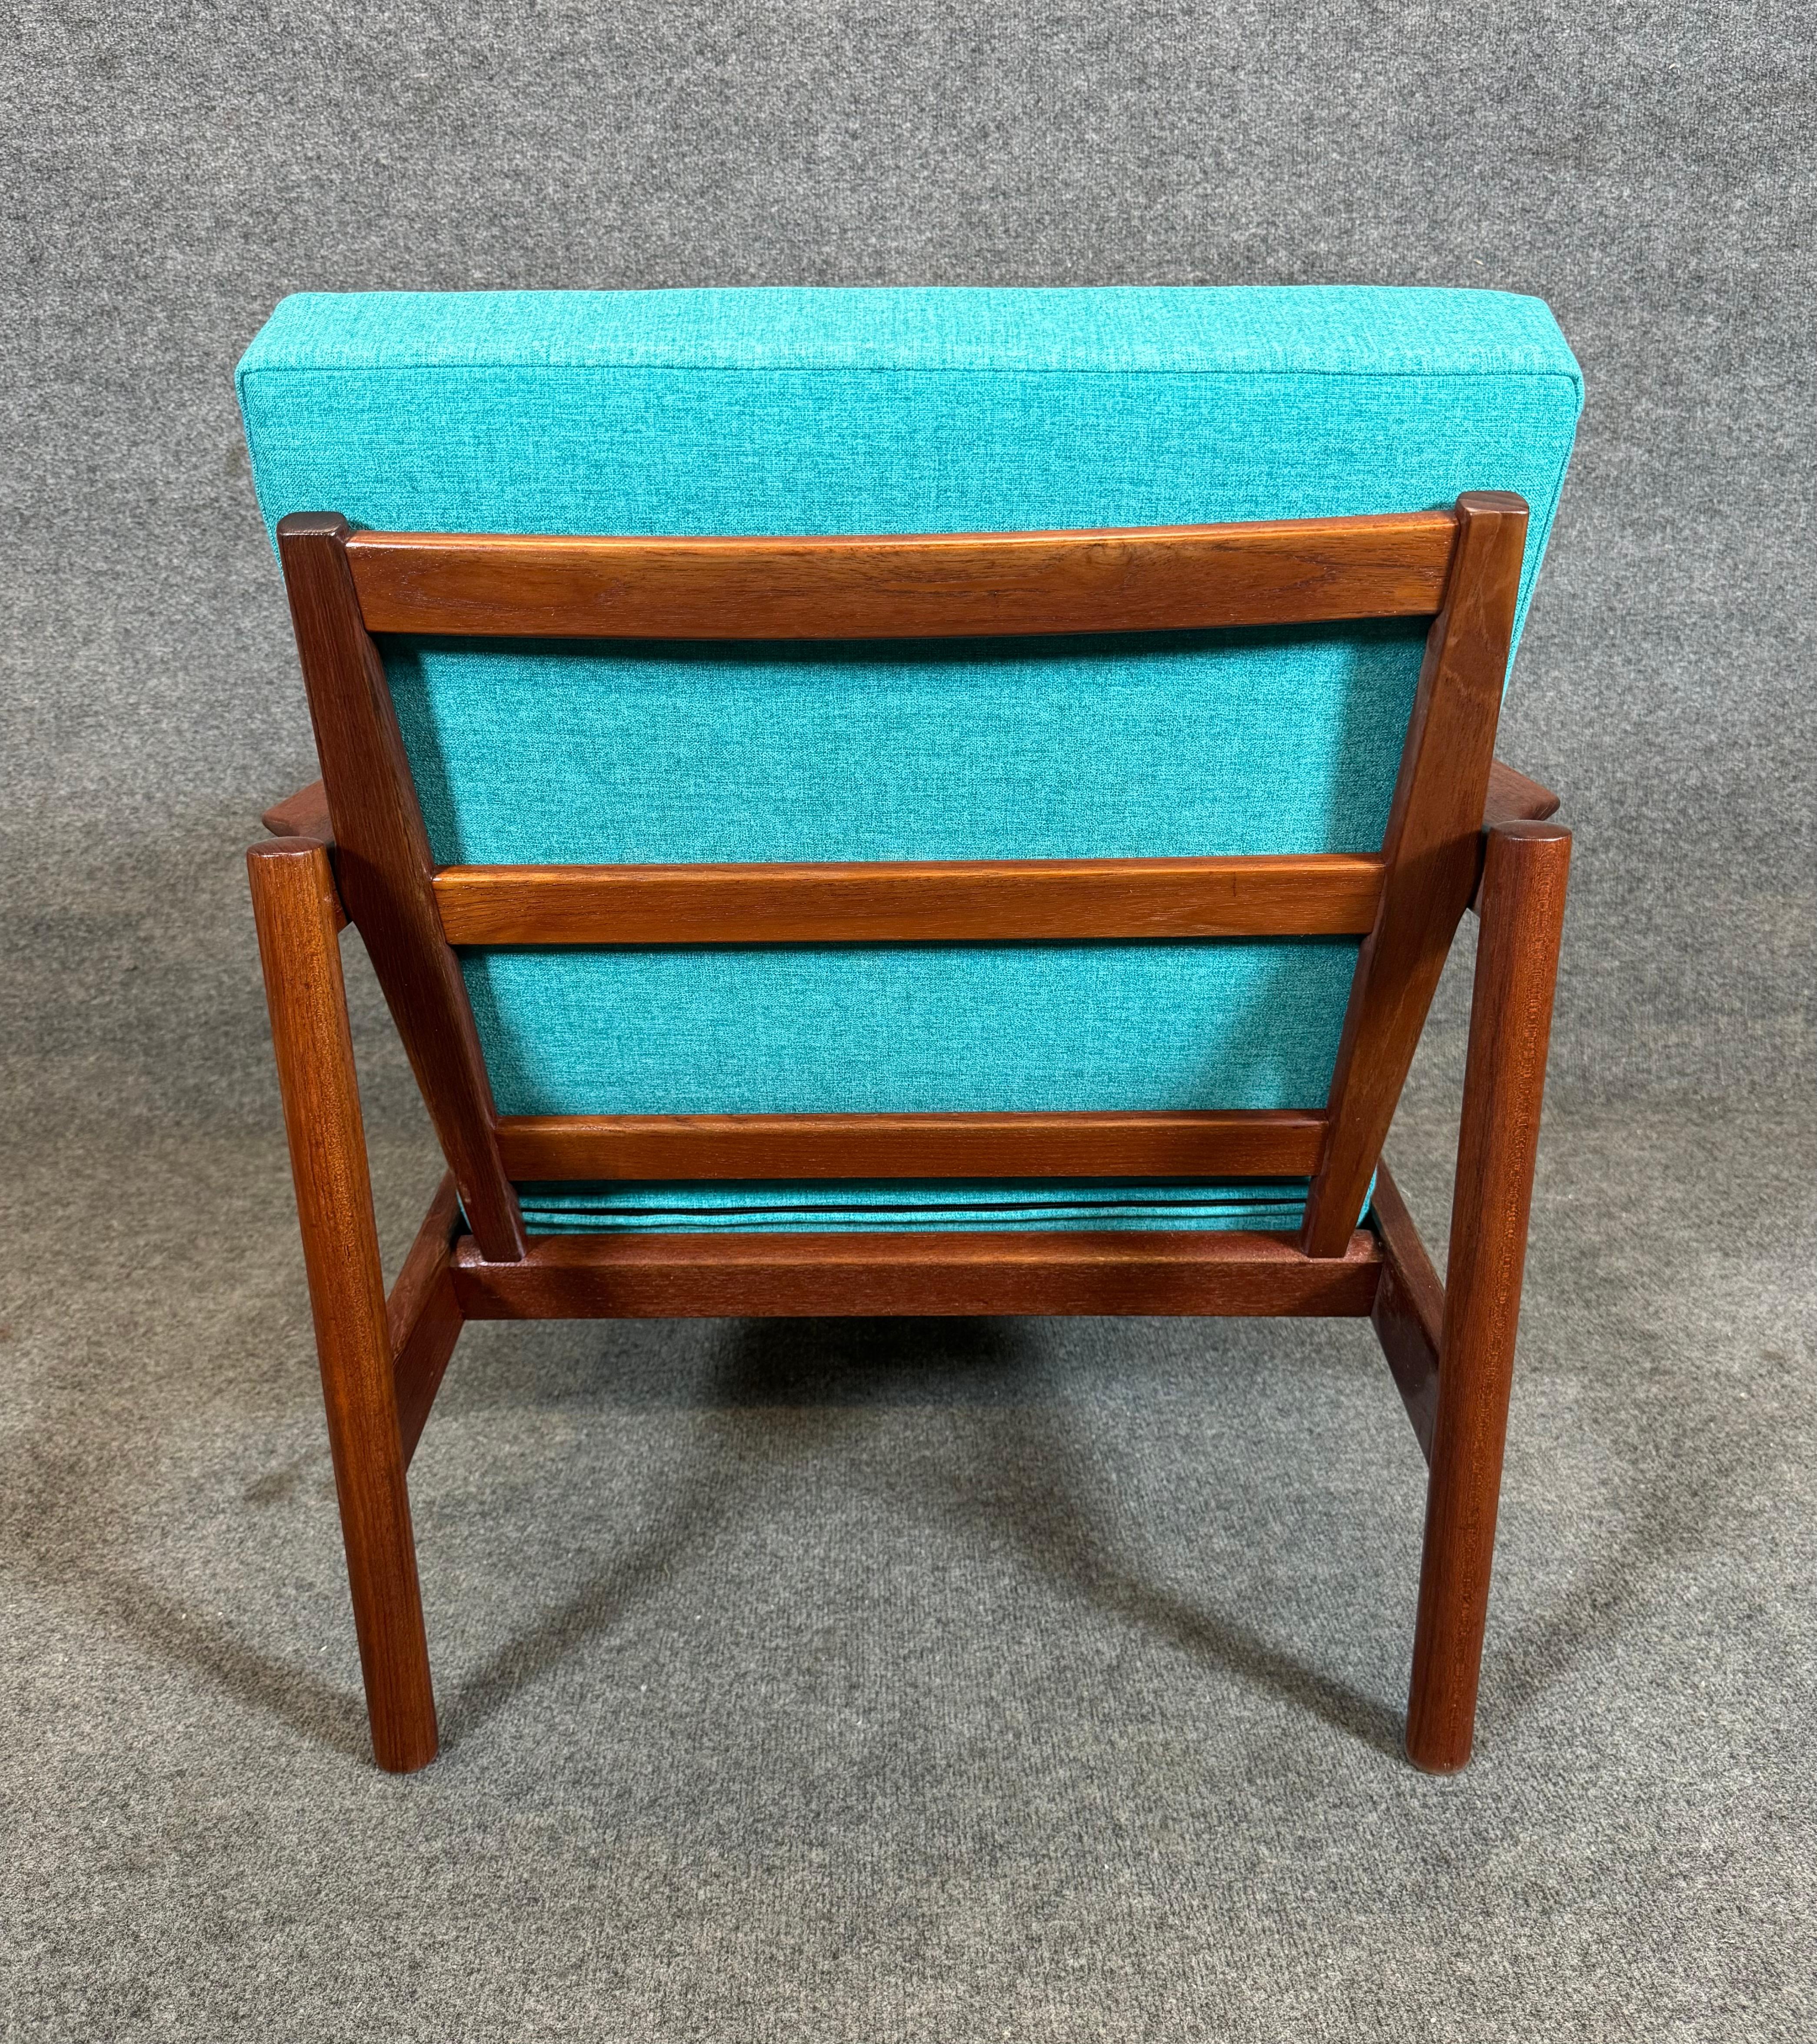 Voici un magnifique fauteuil moderne scandinave en teck Modèle KK161 conçu par Kai Kristiansen et fabriqué par Magnus Olesen Mobelfabrik au Danemark dans les années 1960.
Cette confortable chaise longue, récemment importée d'Europe en Californie